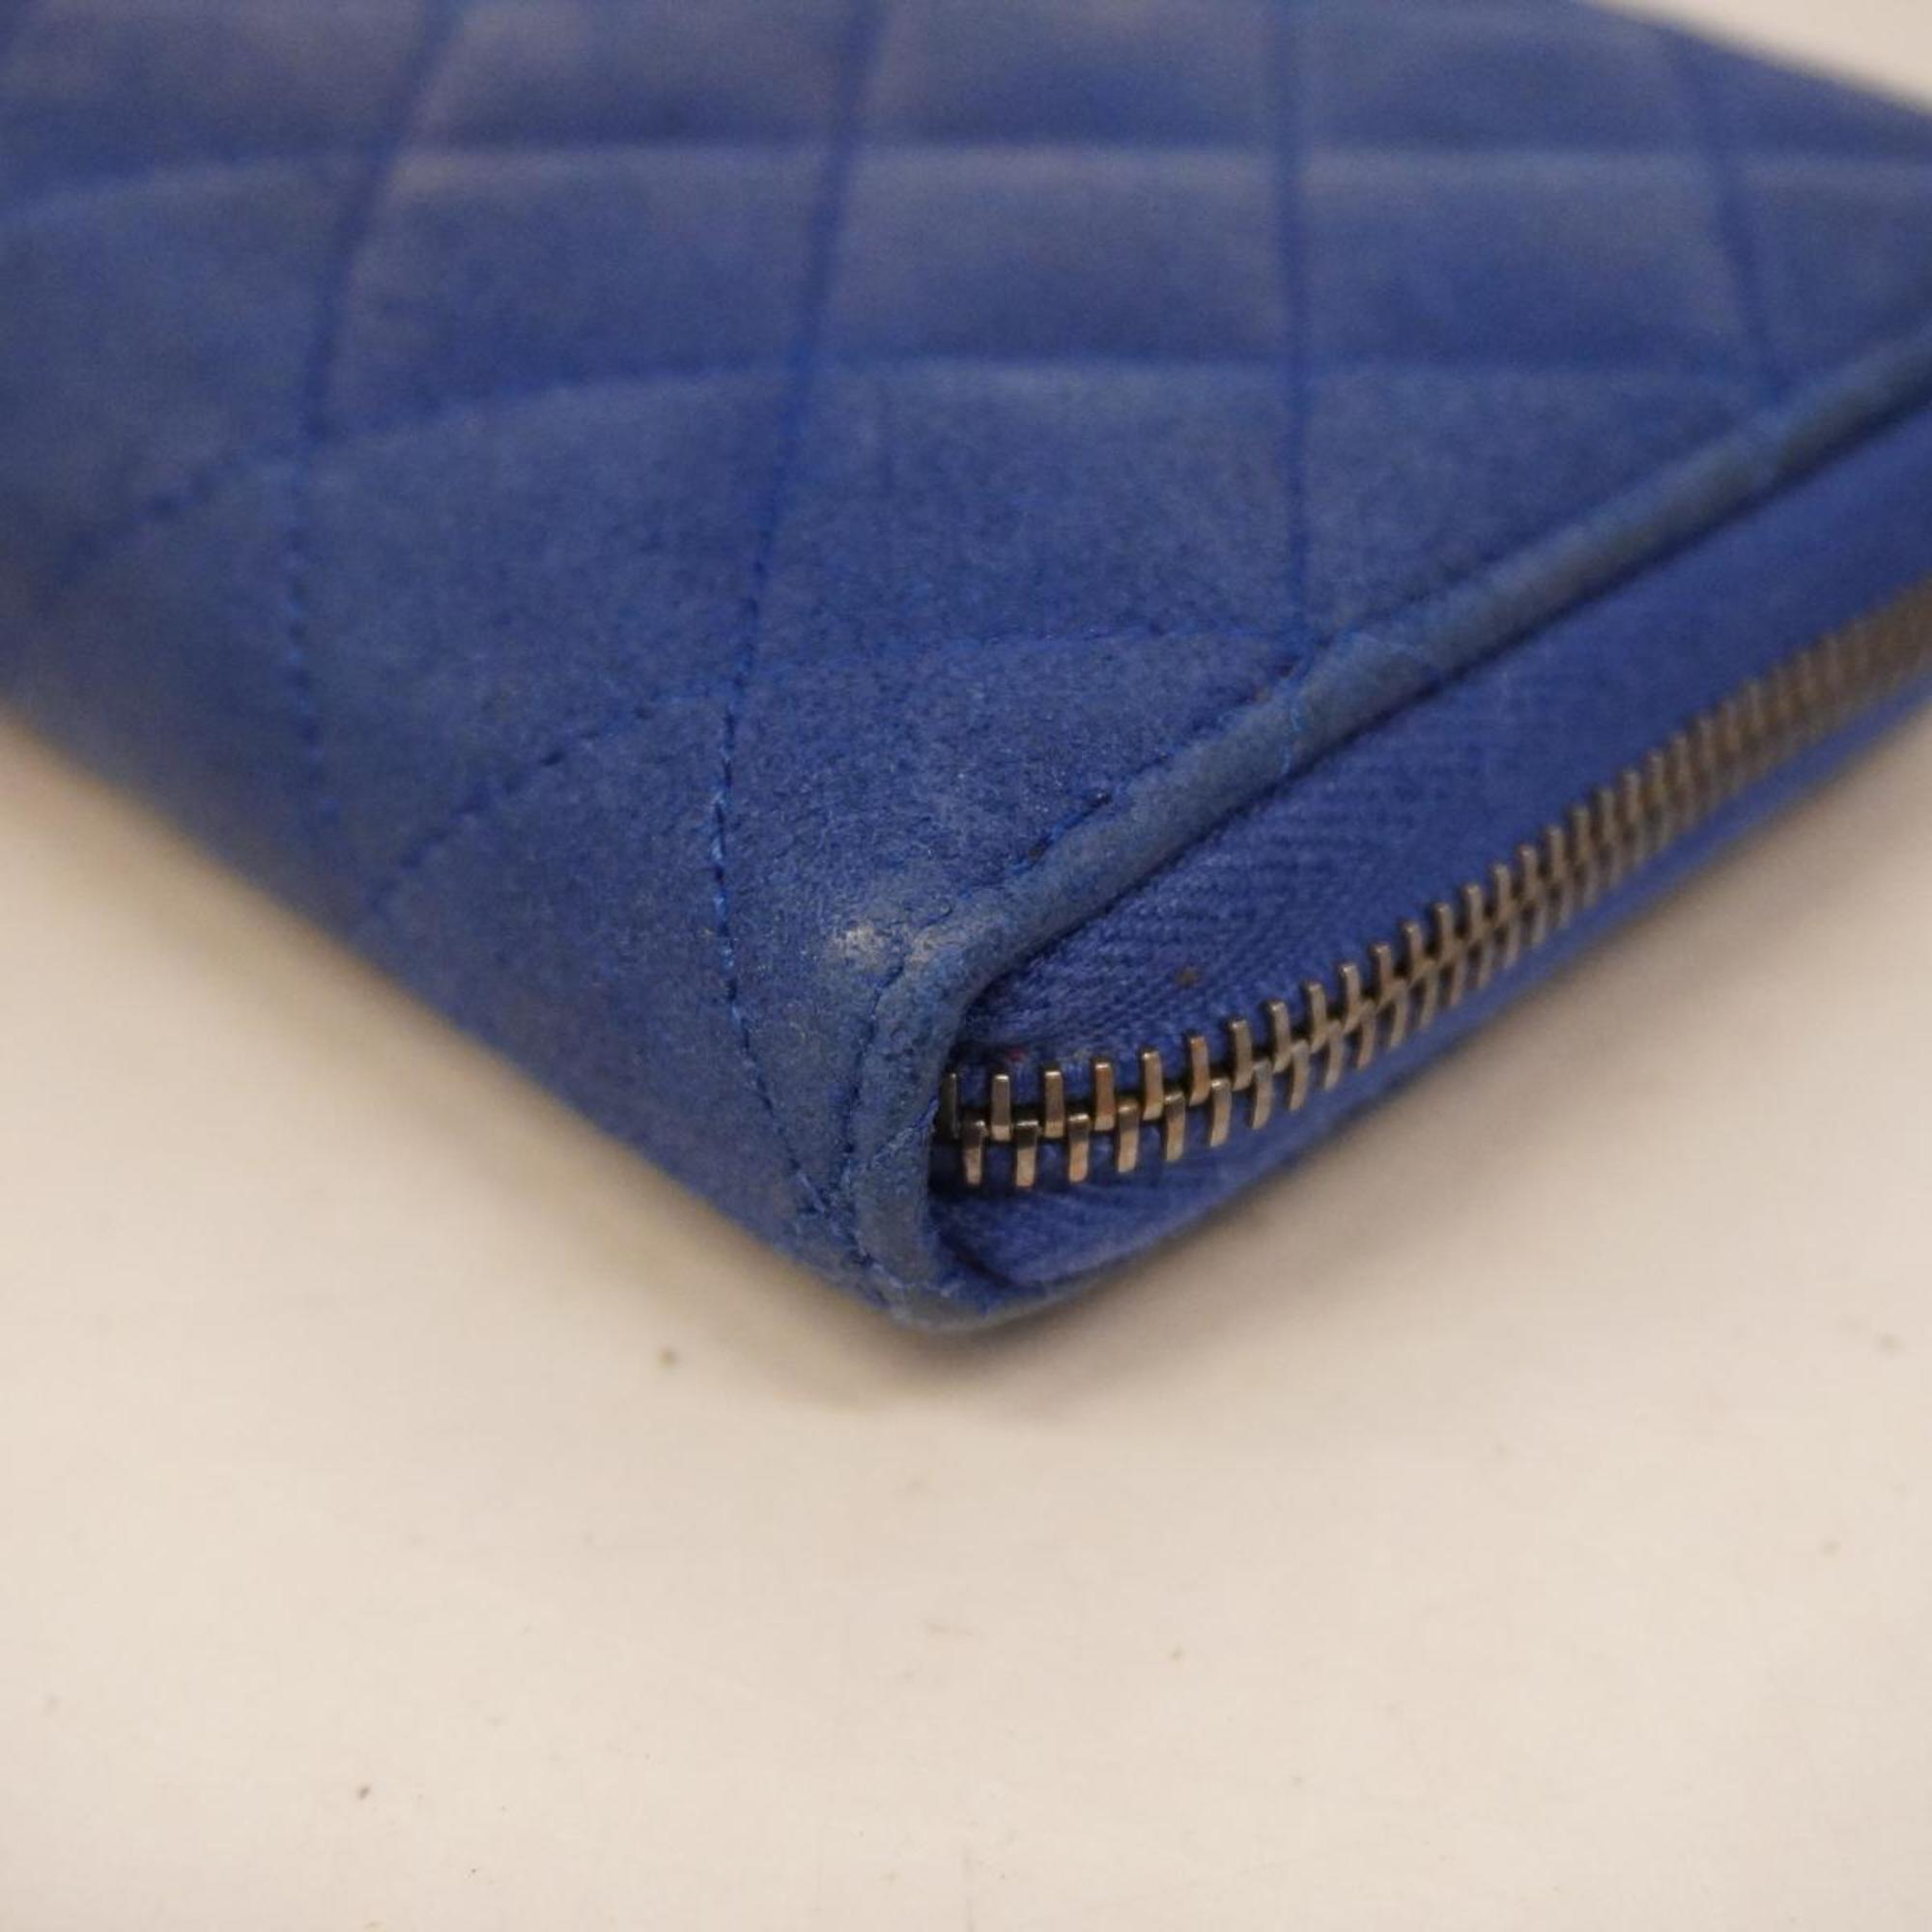 Chanel Long Wallet Matelasse Leather Blue Women's